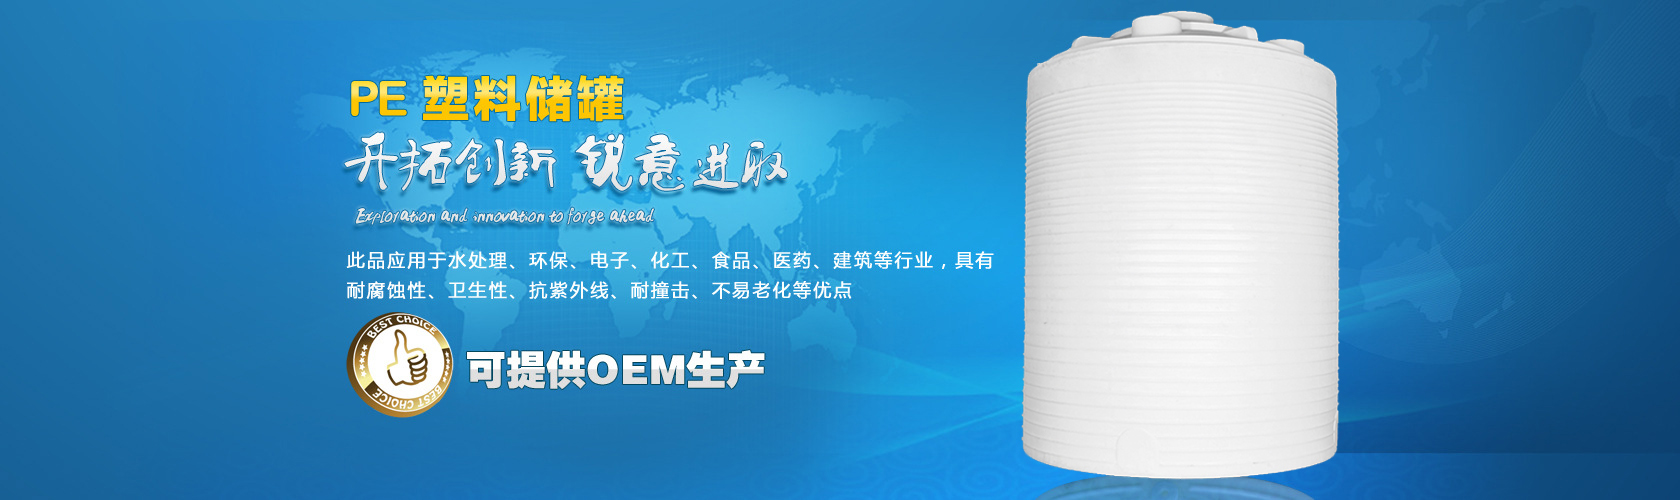 塑料储罐浙江衢州1吨/1方塑料储罐塑料储罐厂家价格